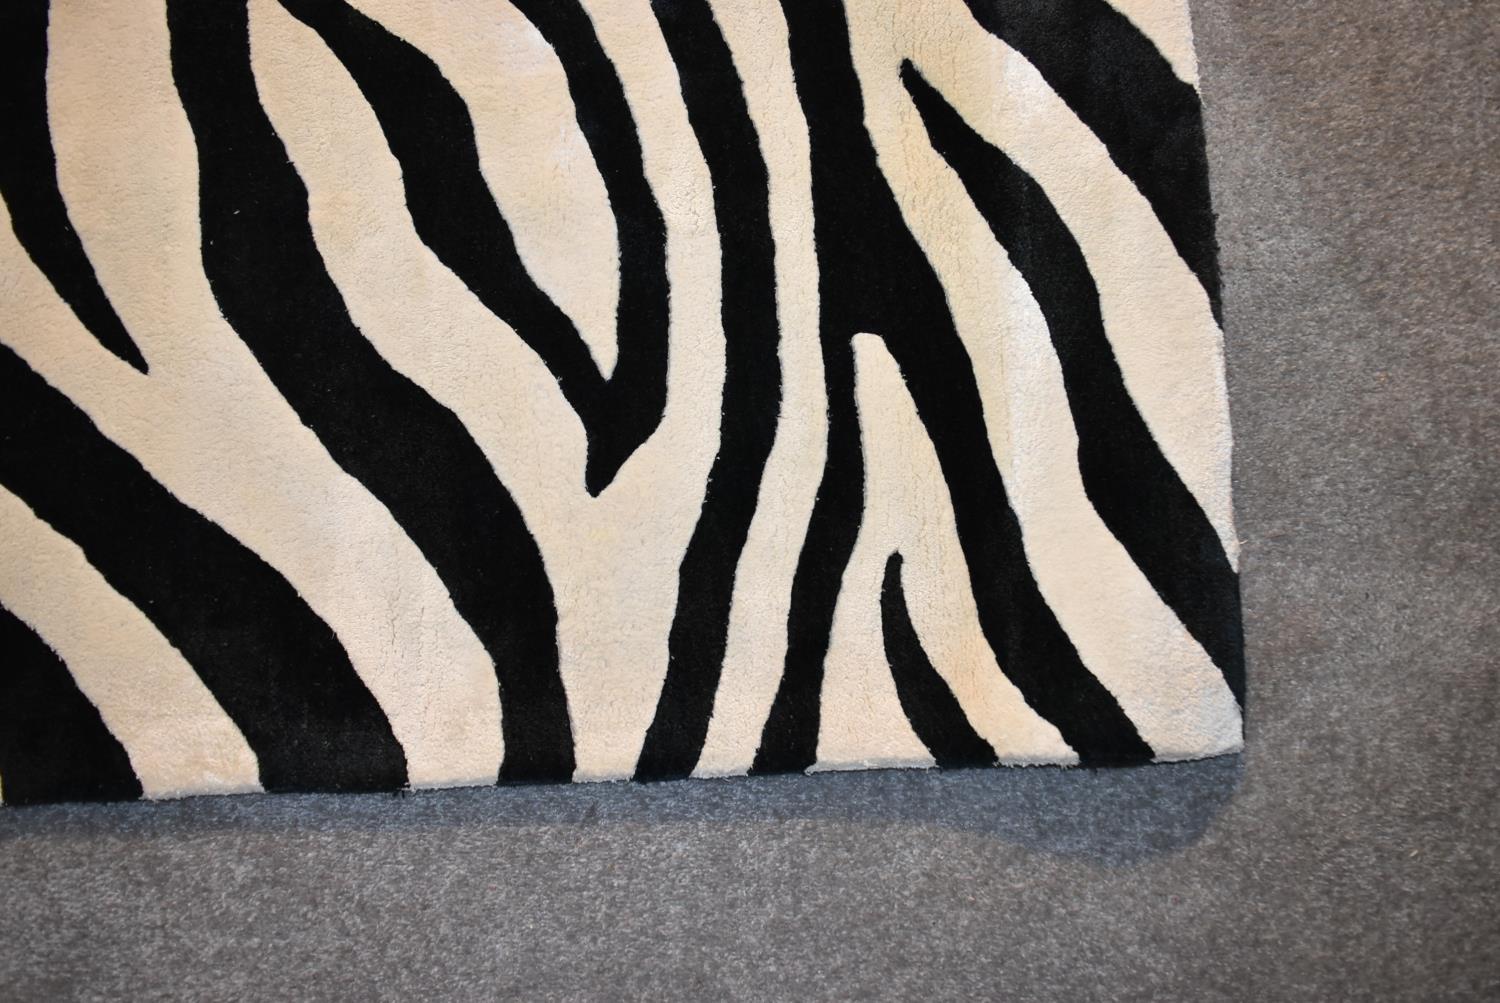 A Zebra skin patterned rug. L.274x182cm - Image 2 of 3